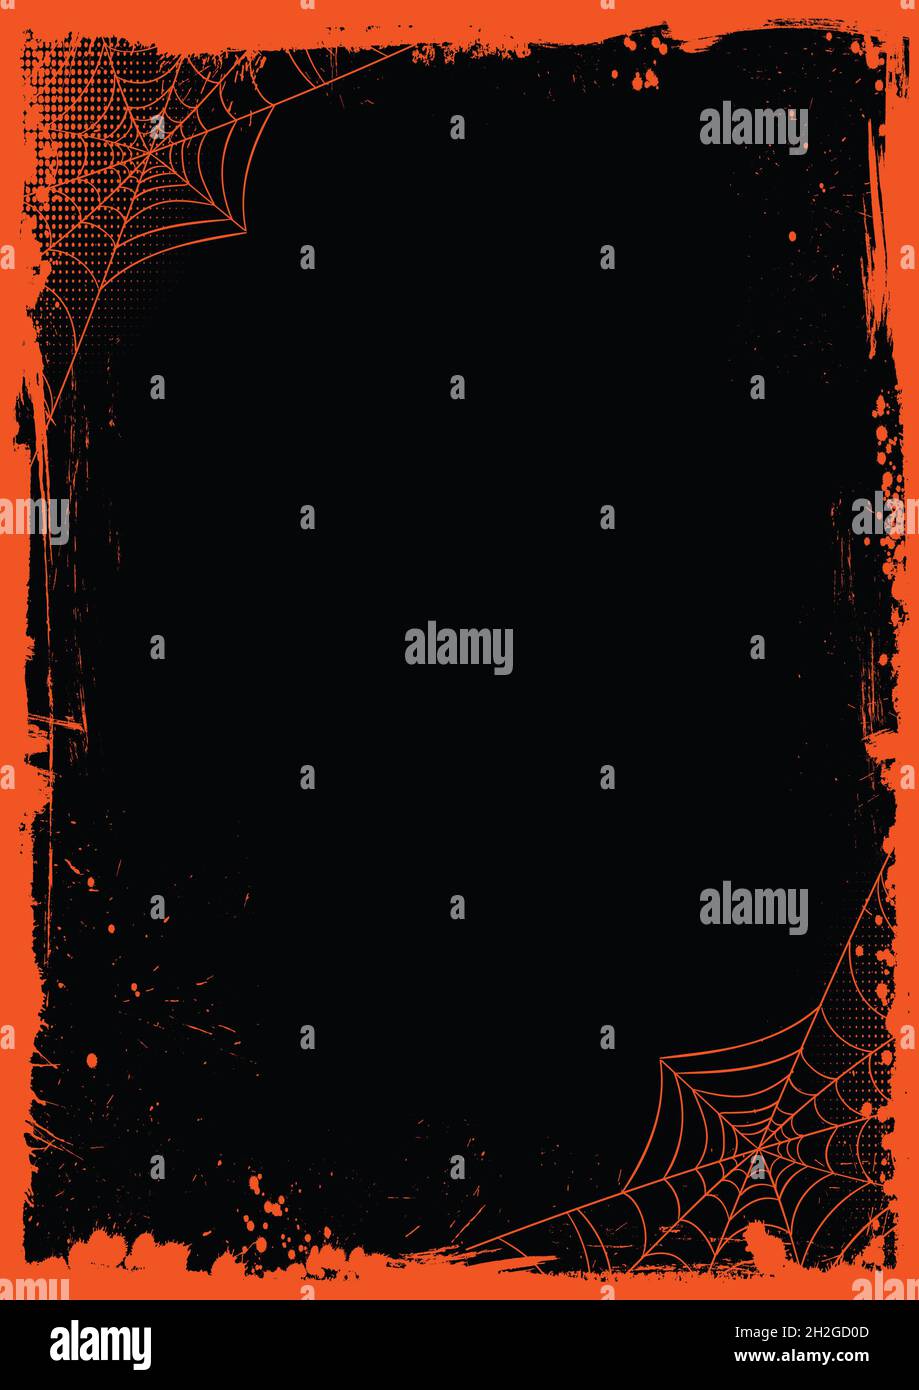 La bannière horizontale d'Halloween Vector est un fond de modèle noir vierge avec grillage de la bordure orange et du filet d'araignée Banque D'Images